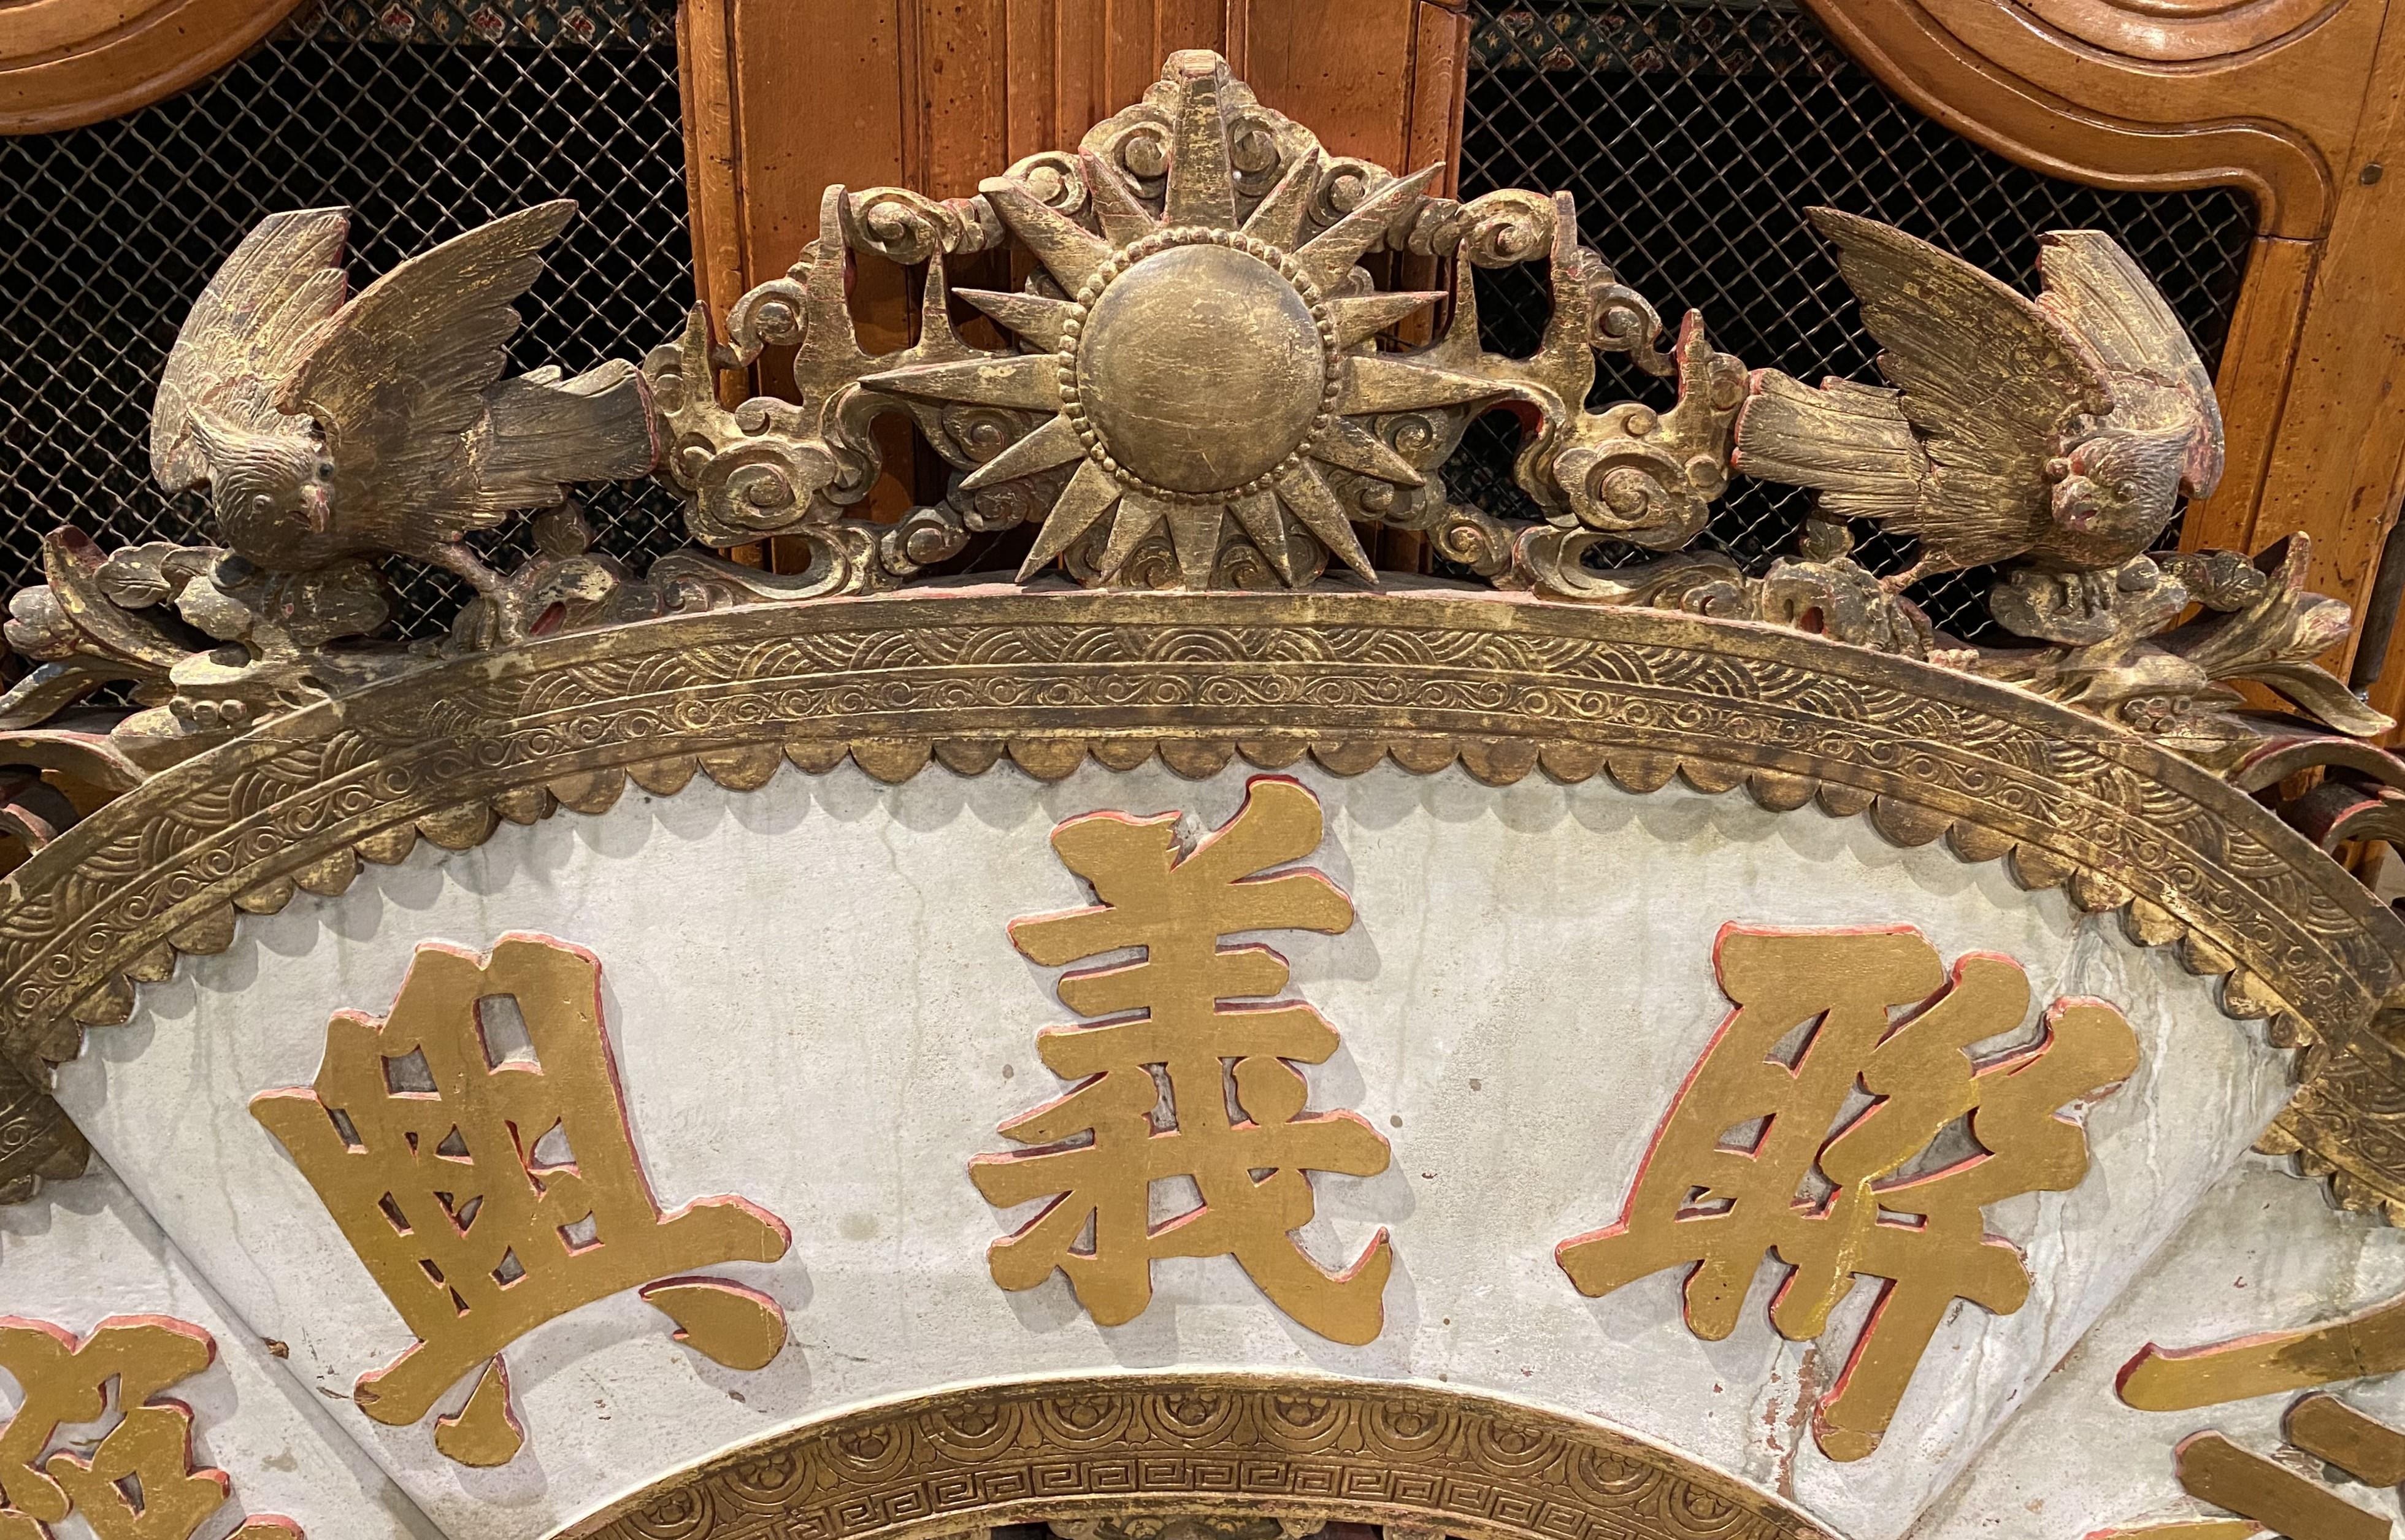 Un fronton architectural décoratif chinois en bois sculpté, provenant probablement d'un temple, dont la crête présente une étoile centrale sculptée et dorée, flanquée d'oiseaux, de fleurs, de rinceaux et de dragons sculptés à l'emporte-pièce. De